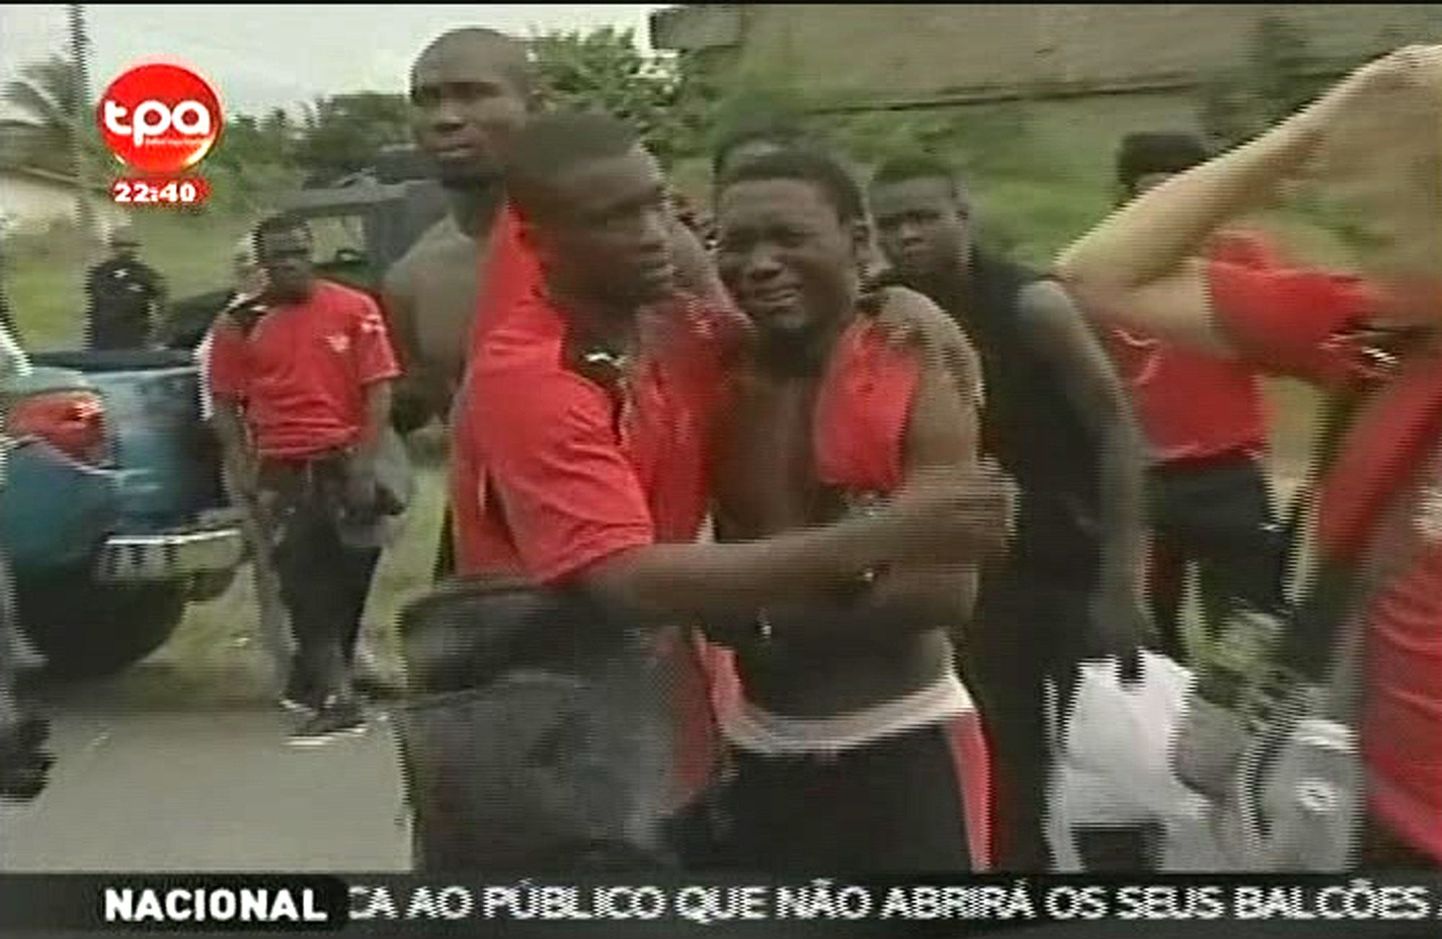 Terroristid tulistasid Togo jalgpallikoondise bussi pihta. Pilt on tehtud teleekraanilt.